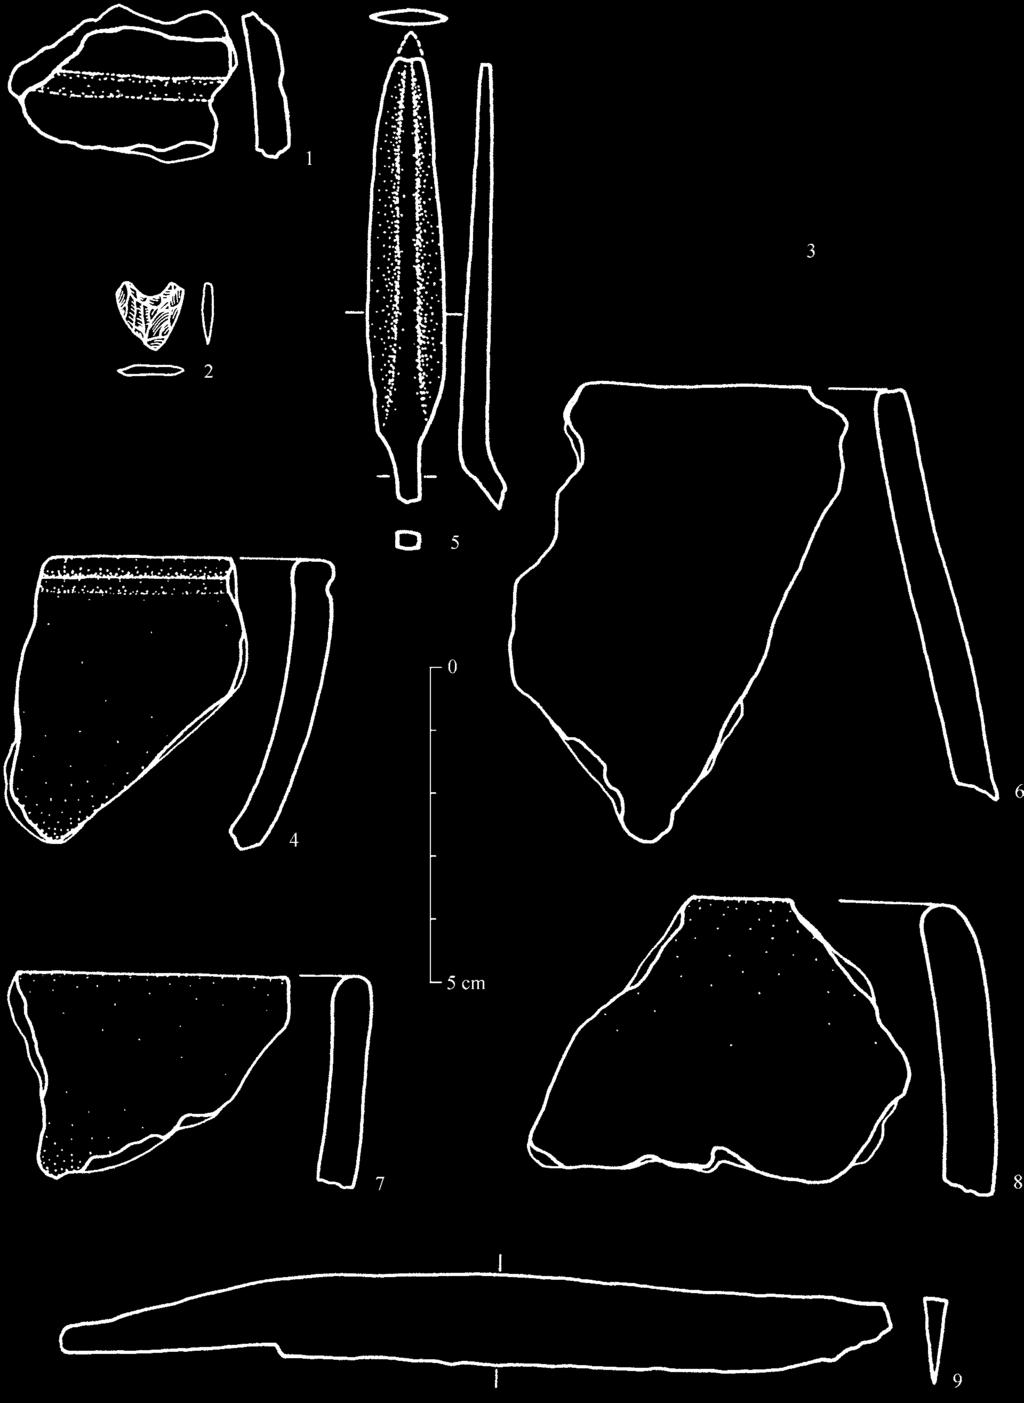 1, 4, 6-8 - hlina; 2 - obsidián; 3 - mosadz(?); 5, 9 - železo (Soják/Terray, 190). Abb. 115. Auswahl von Funden.